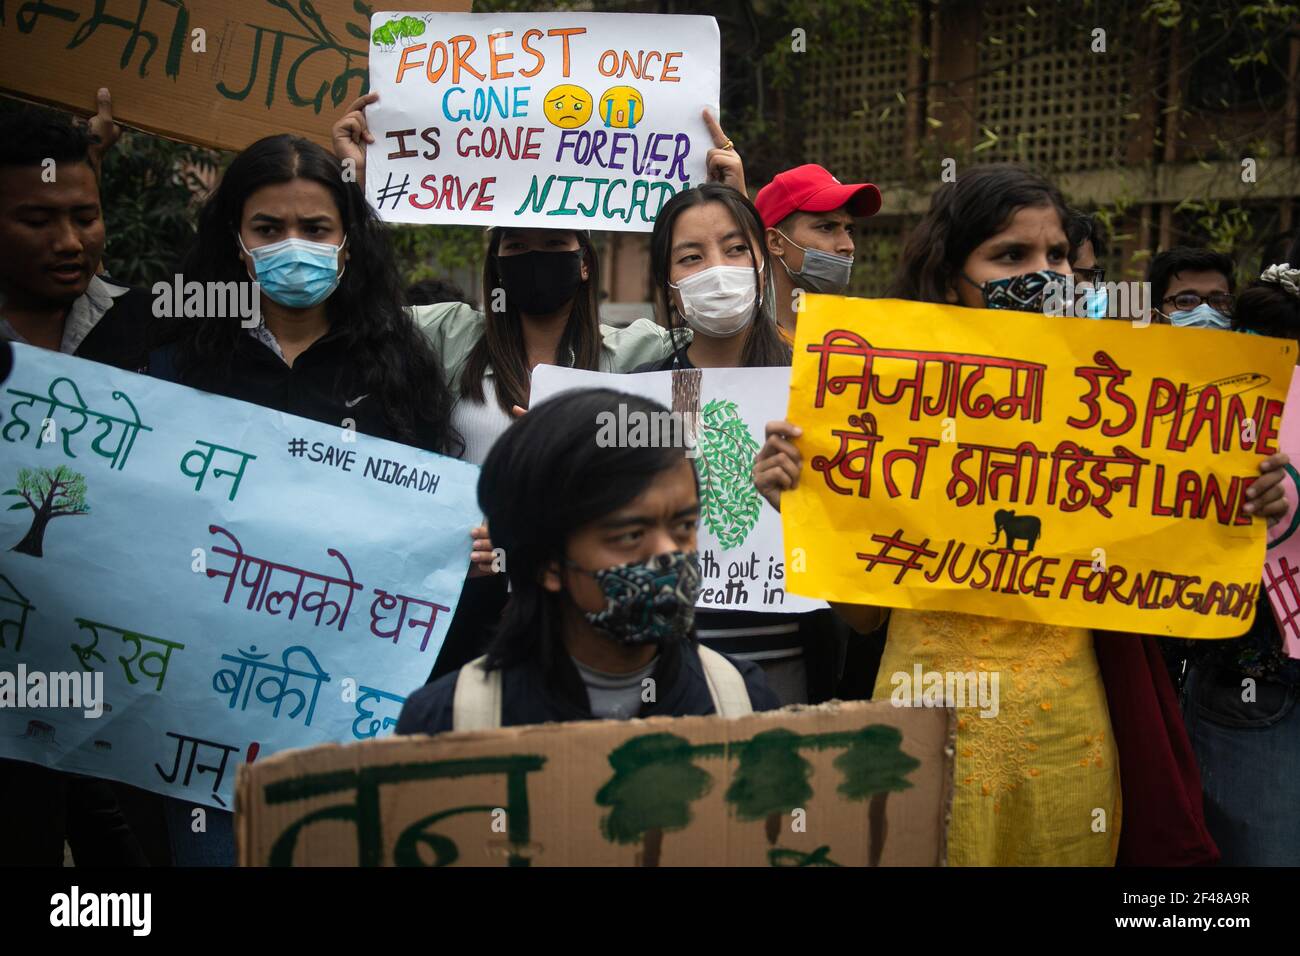 Umweltaktivisten halten Plakate, die ihre Meinung zum Ausdruck bringen, während der Demonstration gegen die Entscheidung, den Nijgadh International Airport in Bara zu bauen, der vermutlich zum Schneiden von Bäumen und Verlust der biologischen Vielfalt führt.der Flughafen liegt etwa 80 Kilometer (50 Meilen) südlich der Hauptstadt Nepals. Es wird geschätzt, dass 2,4 Millionen Bäume für den Bau des Flughafens abgeschlagen werden müssen, der voraussichtlich $3,5 Milliarden kosten wird. (Foto von Prabin Ranabhat / SOPA Images/Sipa USA) Stockfoto